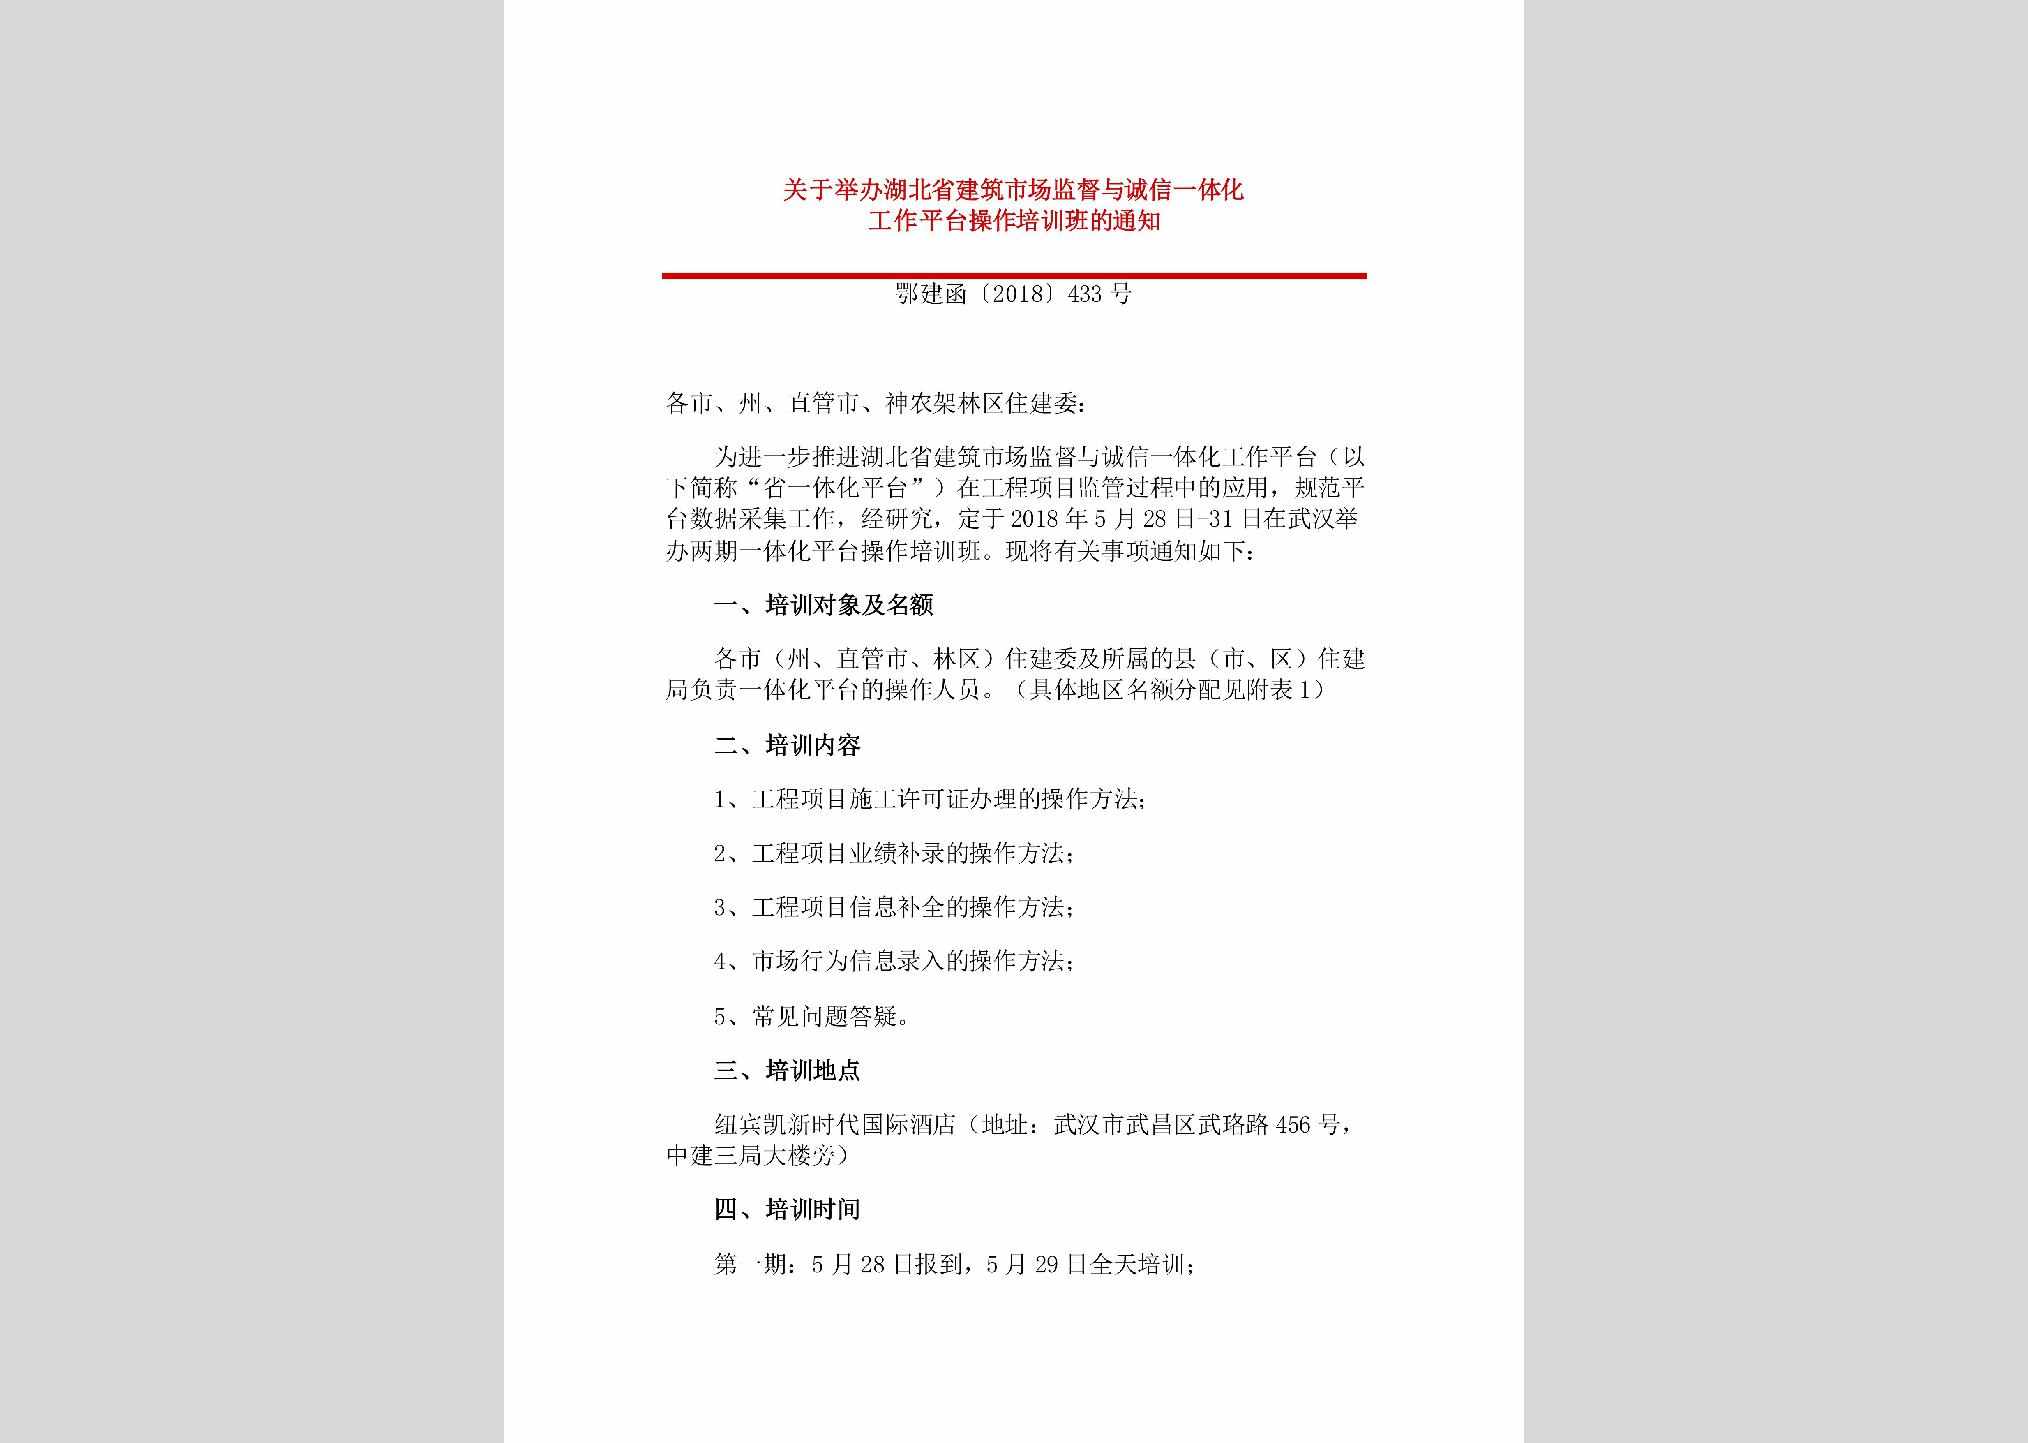 鄂建函[2018]433号：关于举办湖北省建筑市场监督与诚信一体化工作平台操作培训班的通知